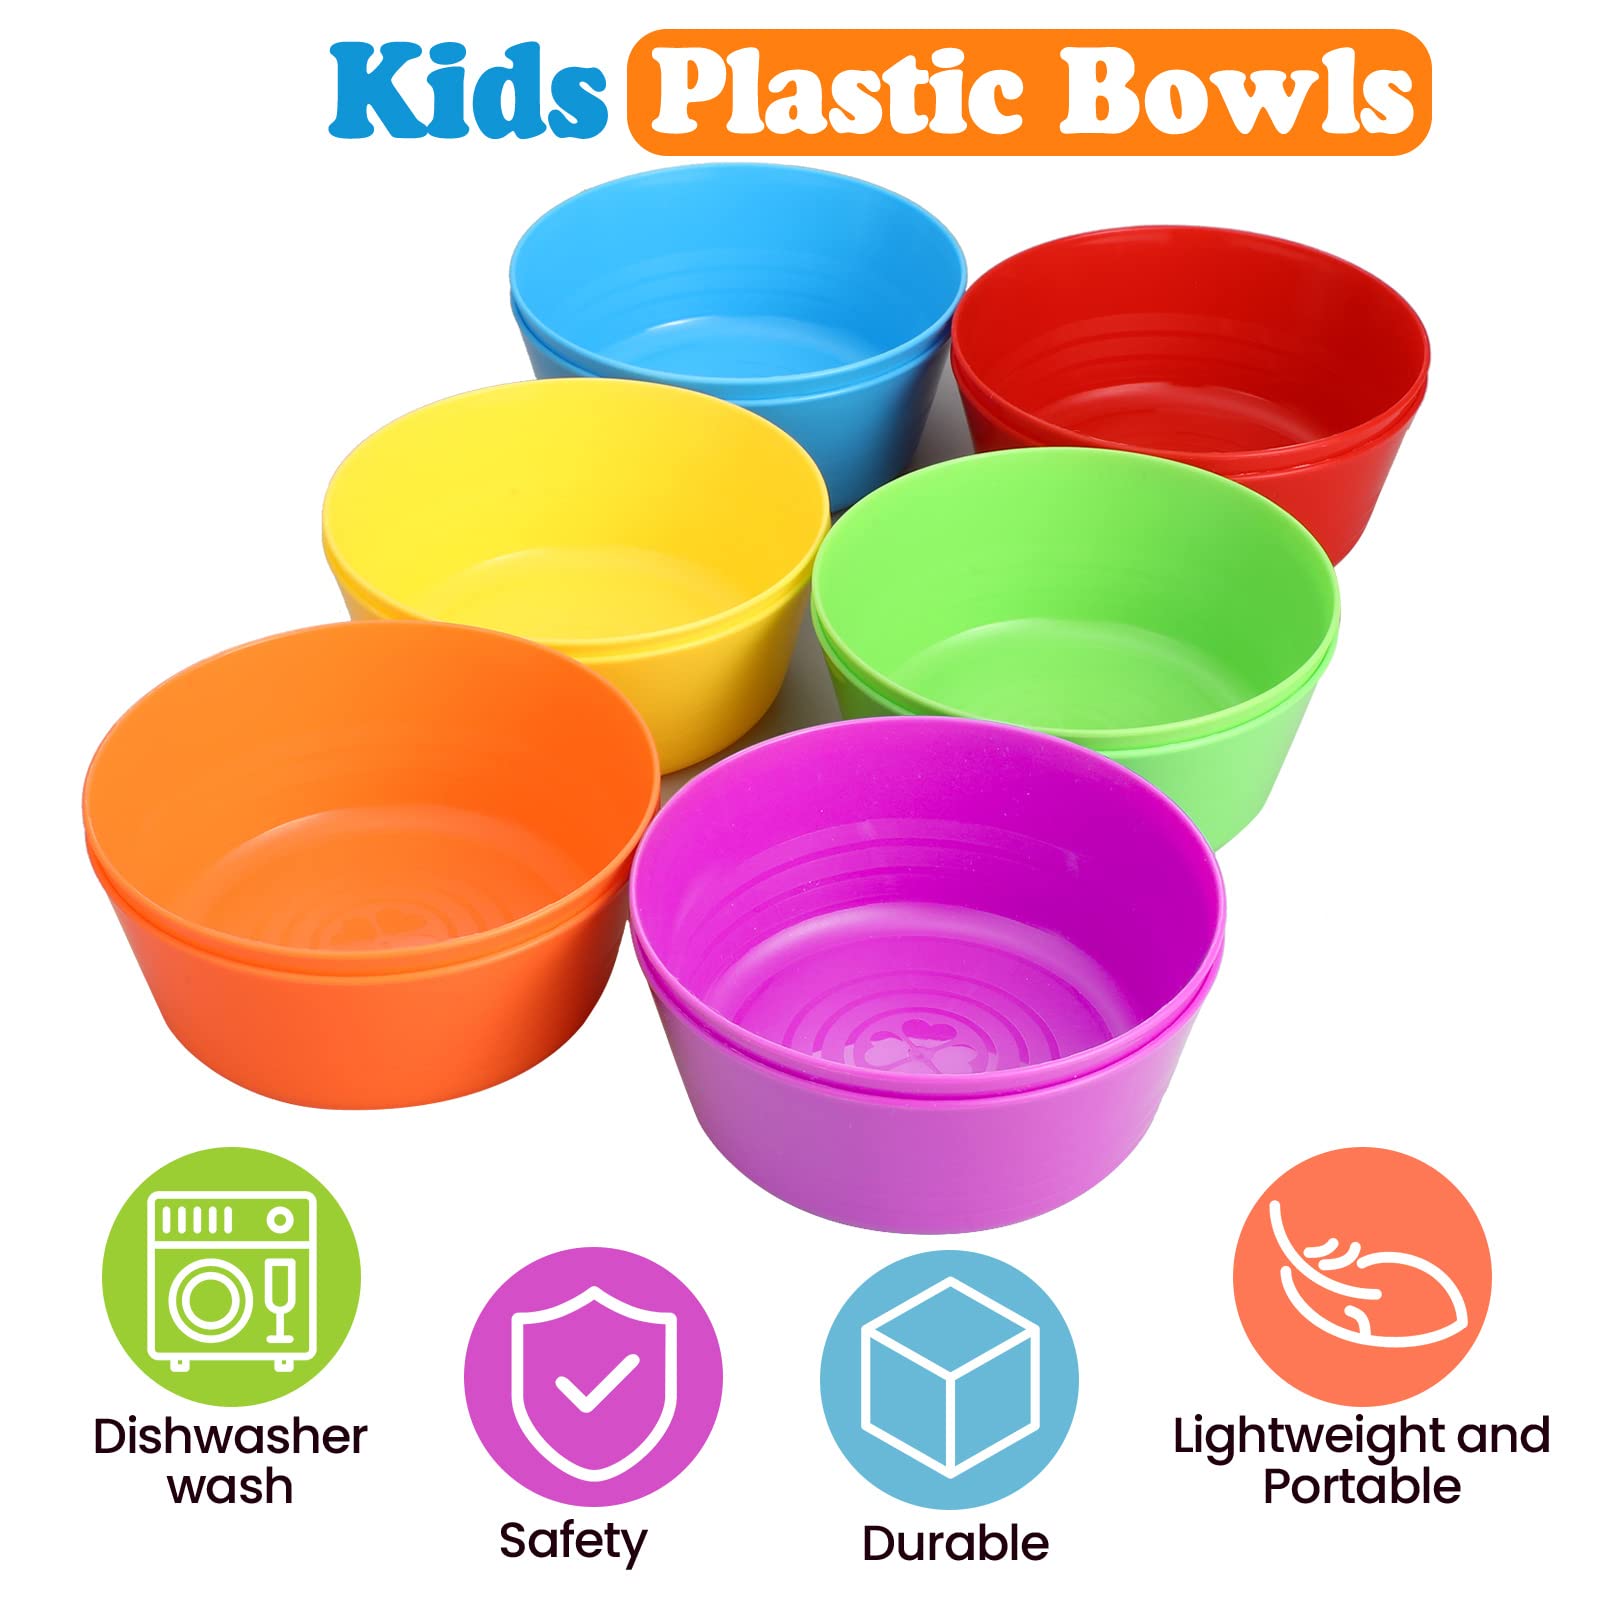 Irenare 48 Pcs Kids Small Plastic Bowls10 oz Cereal Bowls Snack Bowls Kids Bowls Colorful Toddler Bowls Microwave Dishwasher Safe Bowls Salad Dessert Soup Bowls Children Bowl, 6 Colors